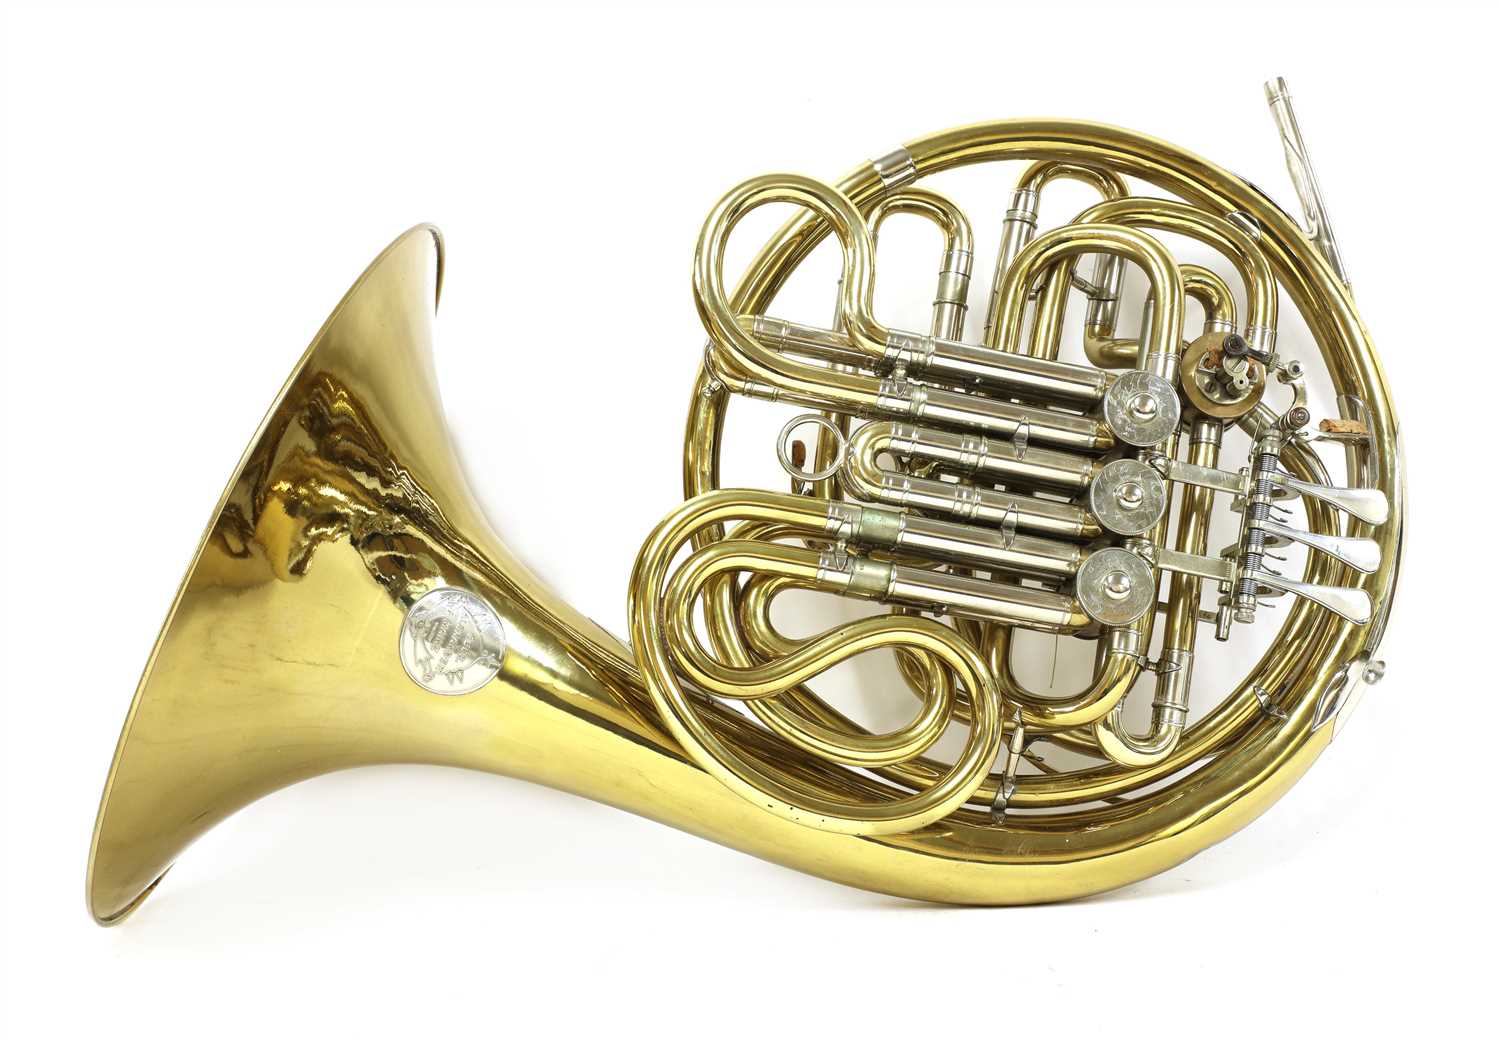 Lot 214 - A Gebruder Alexander of Mainz French horn